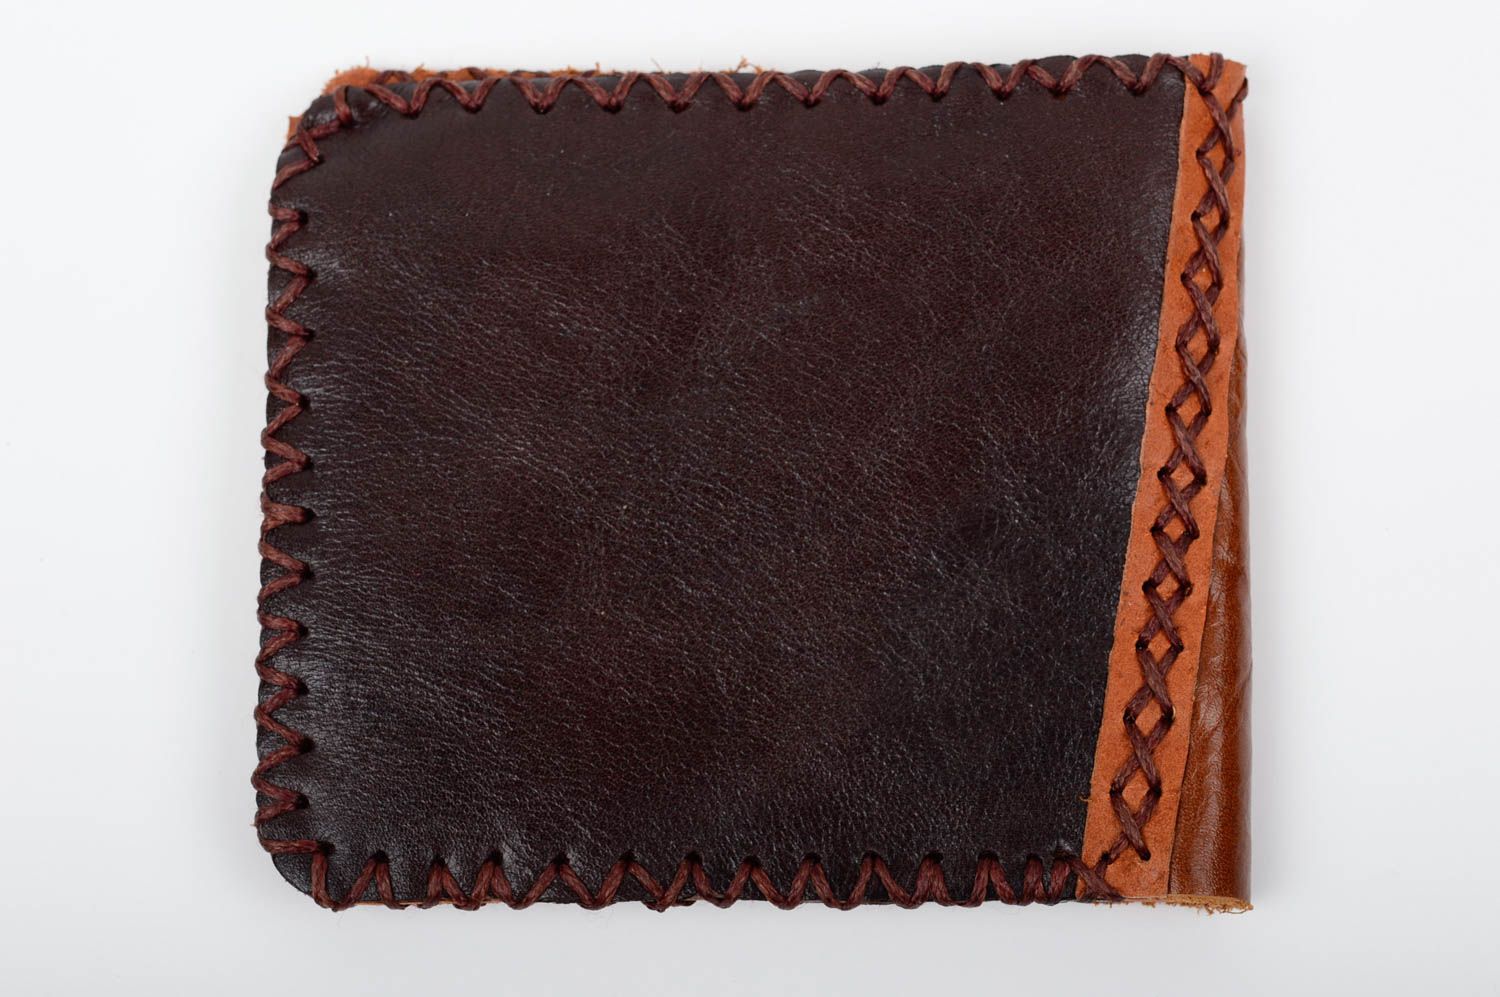 Оригинальный кожаный кошелек с металлической вставкой с шитьем ручной работы фото 4